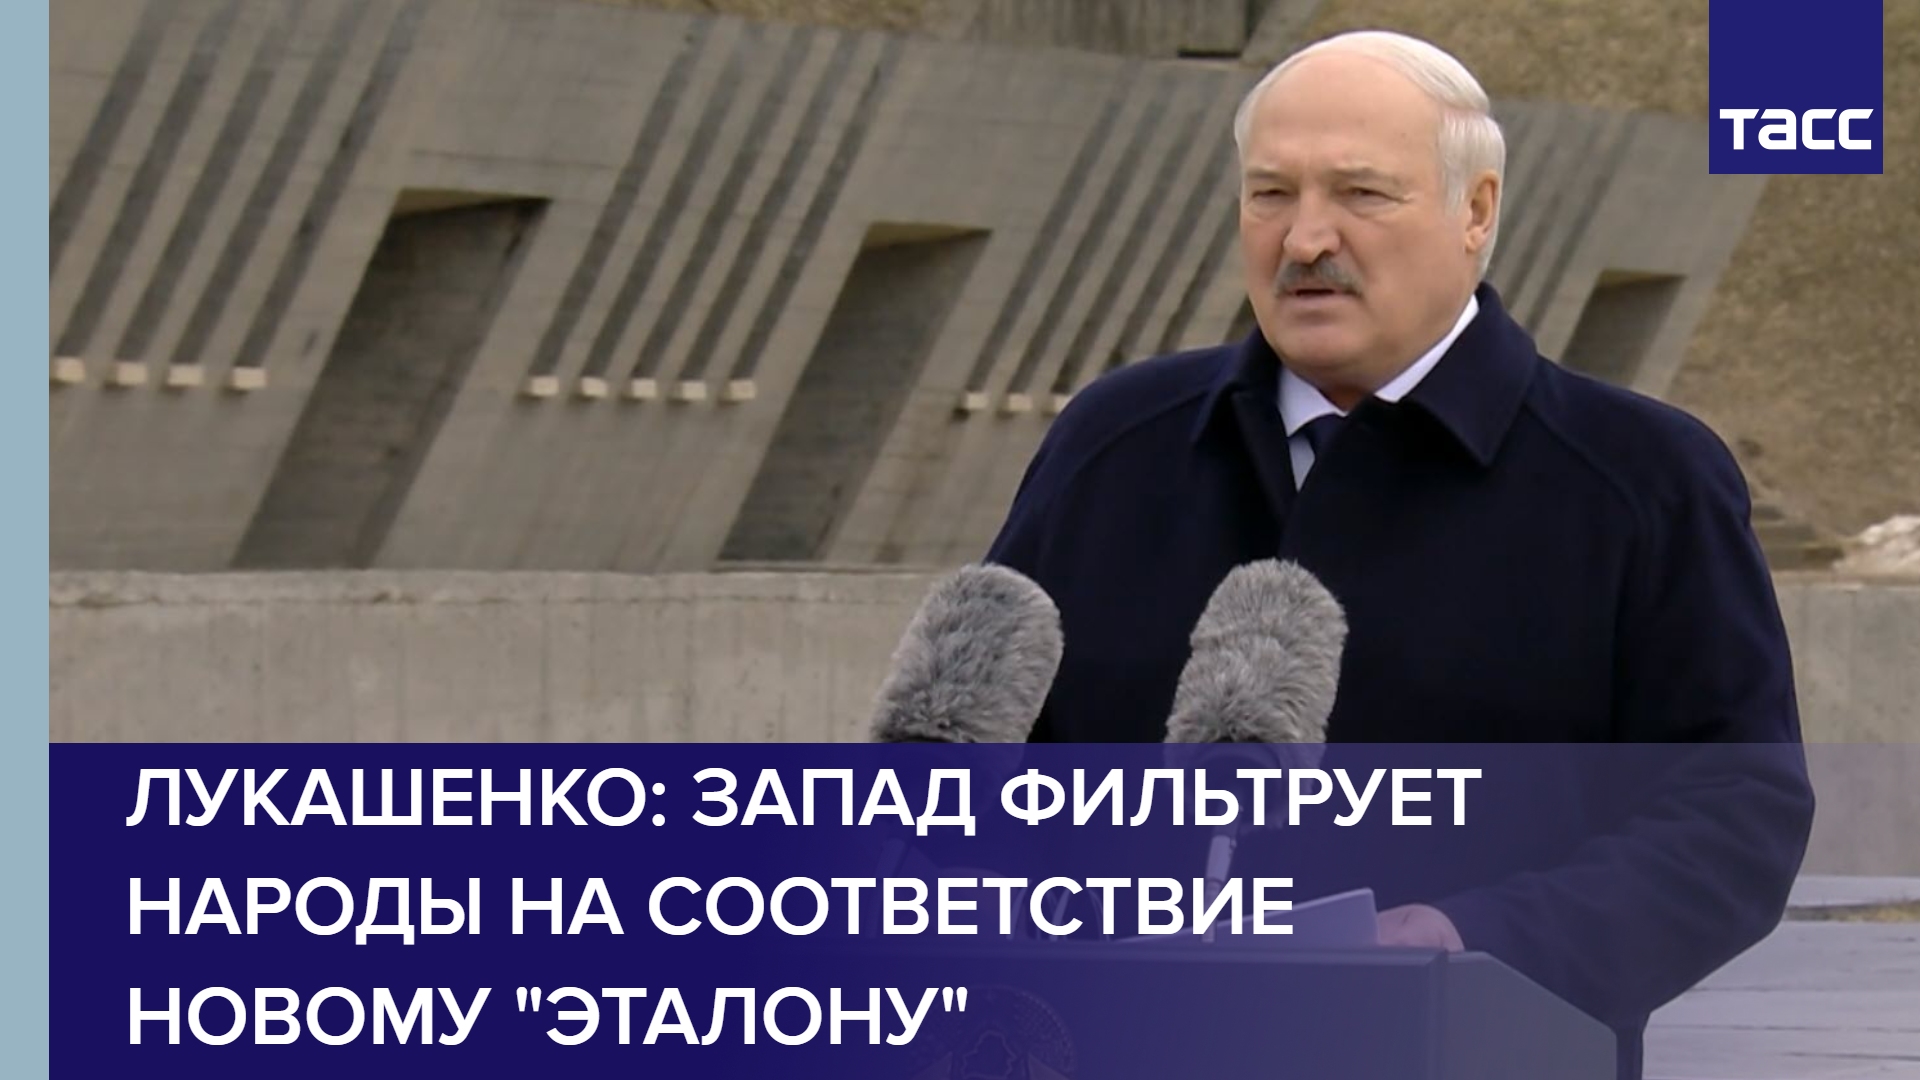 Лукашенко: Запад фильтрует народы на соответствие новому "эталону" #shorts